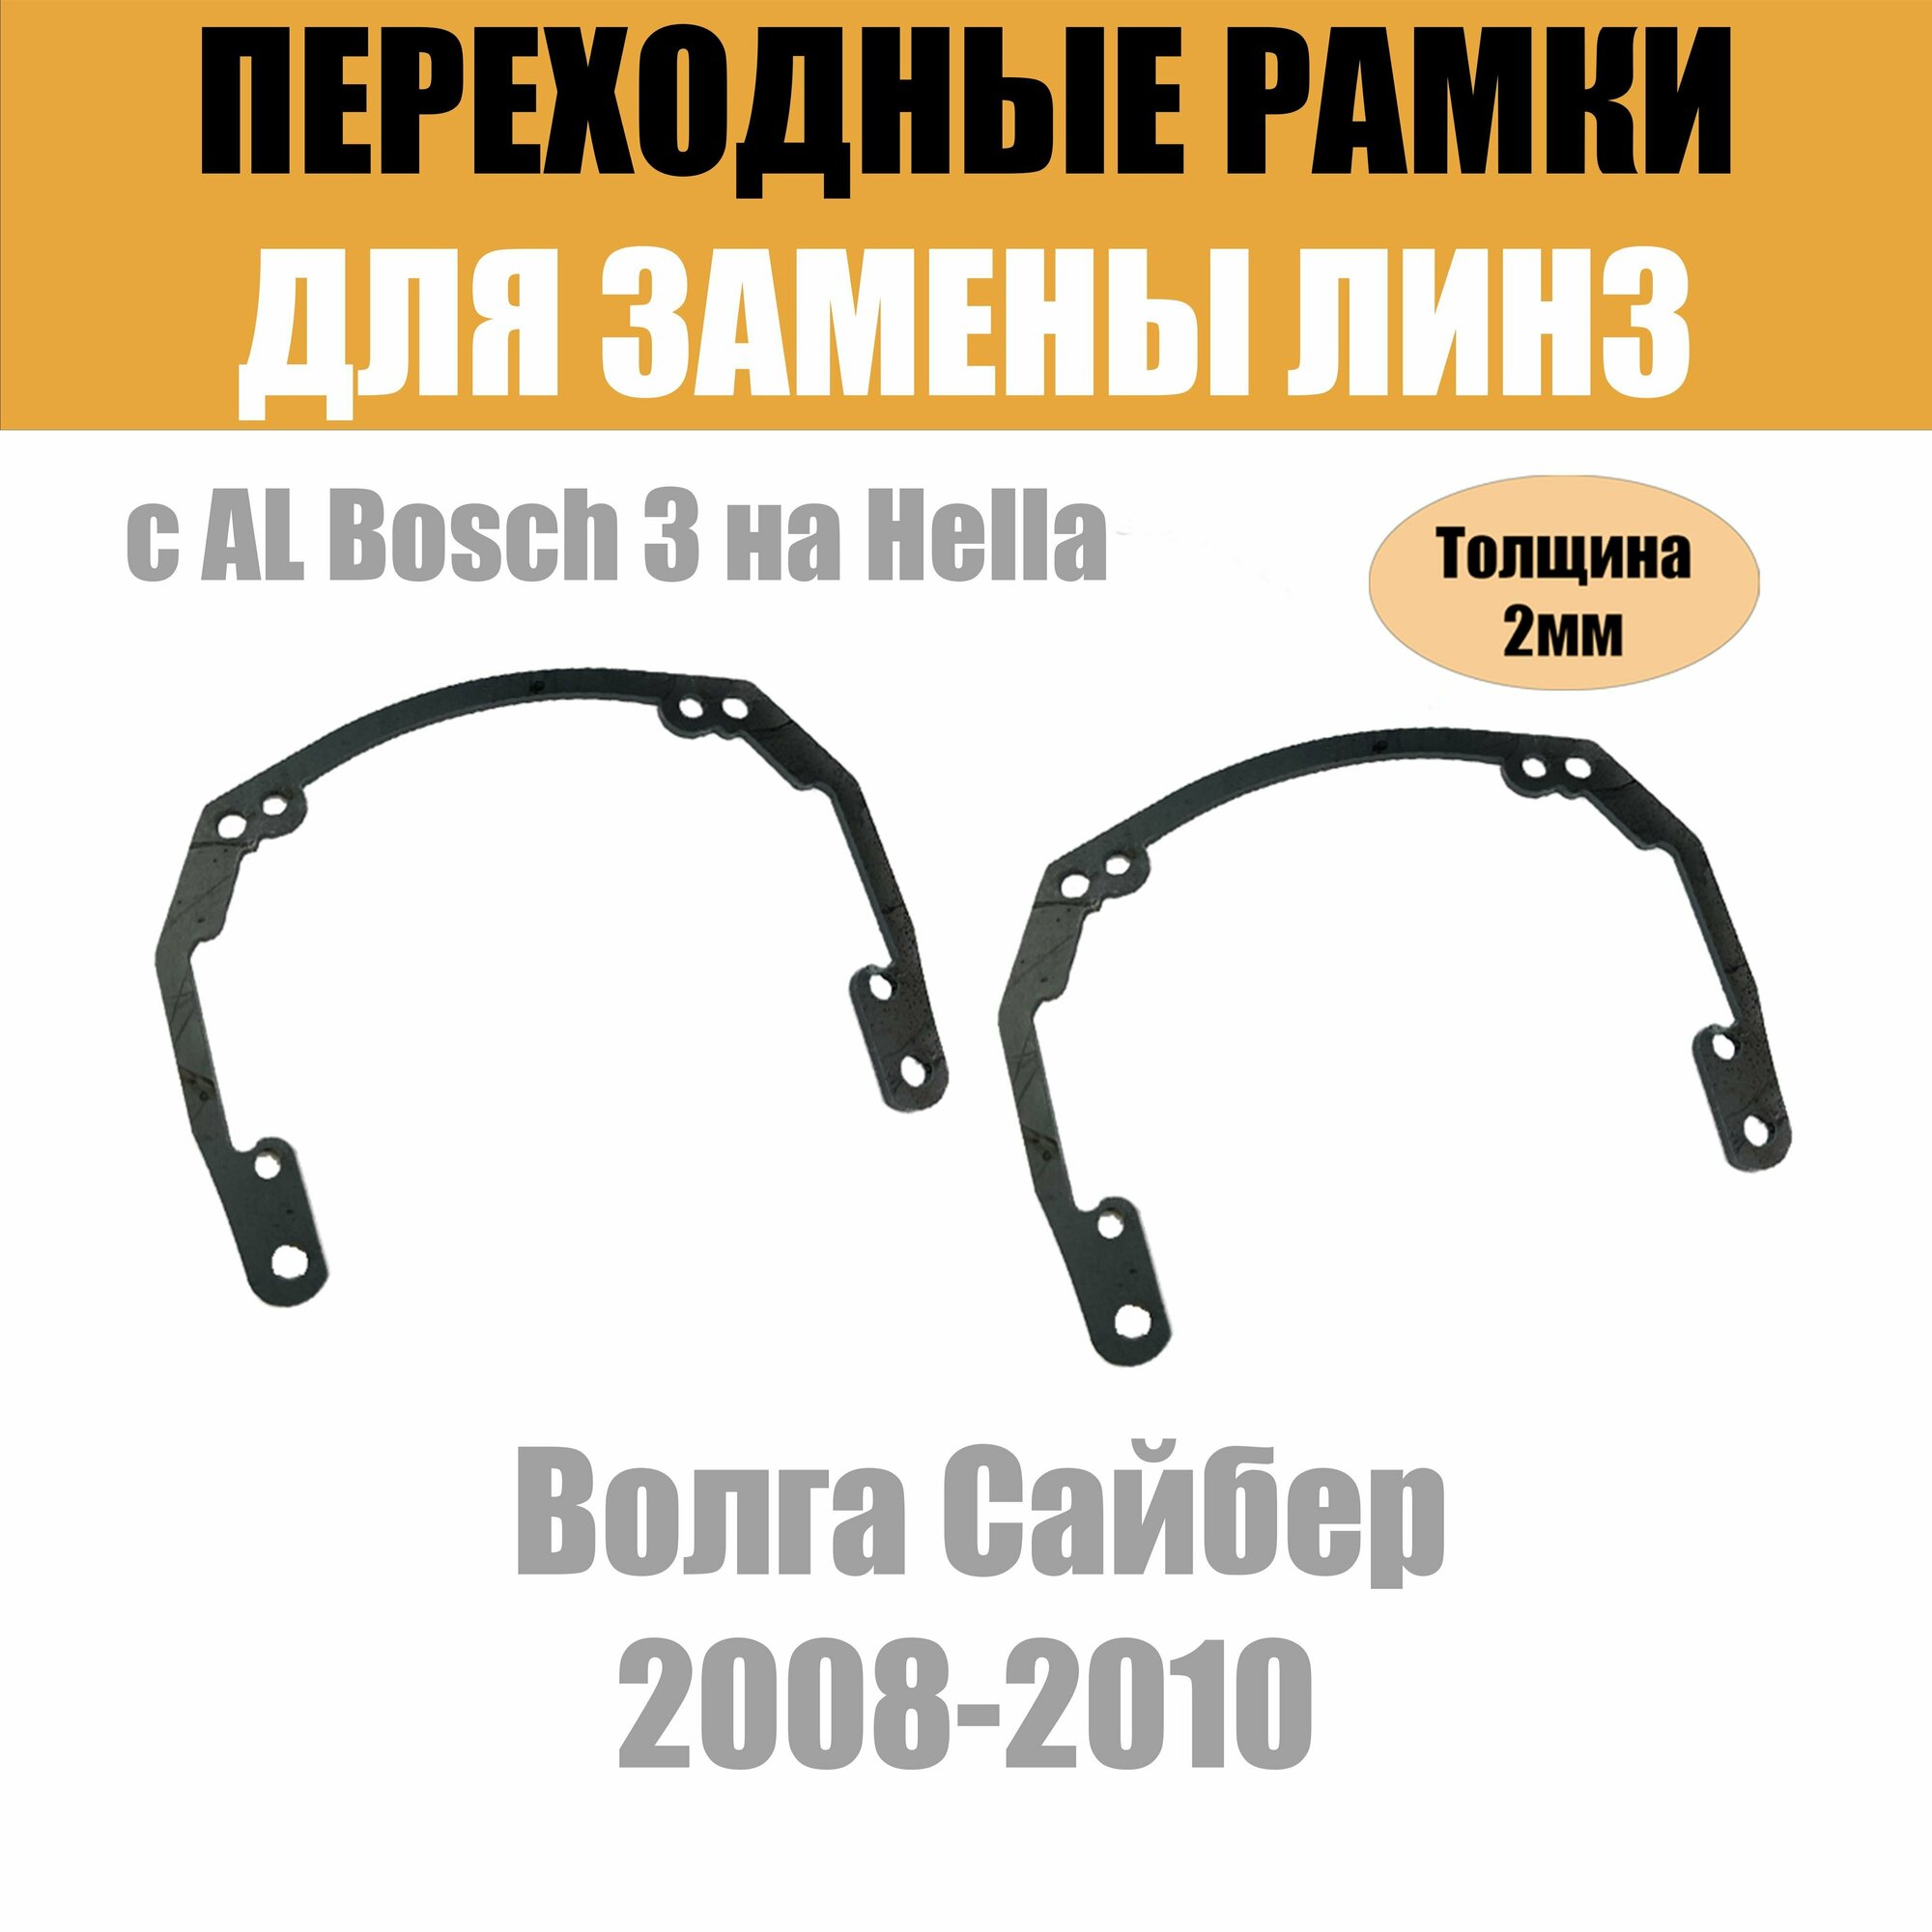 Переходные рамки для линз на Волга Сайбер 2008-2010 под модуль Hella 3R/Hella 3 (Комплект 2шт)